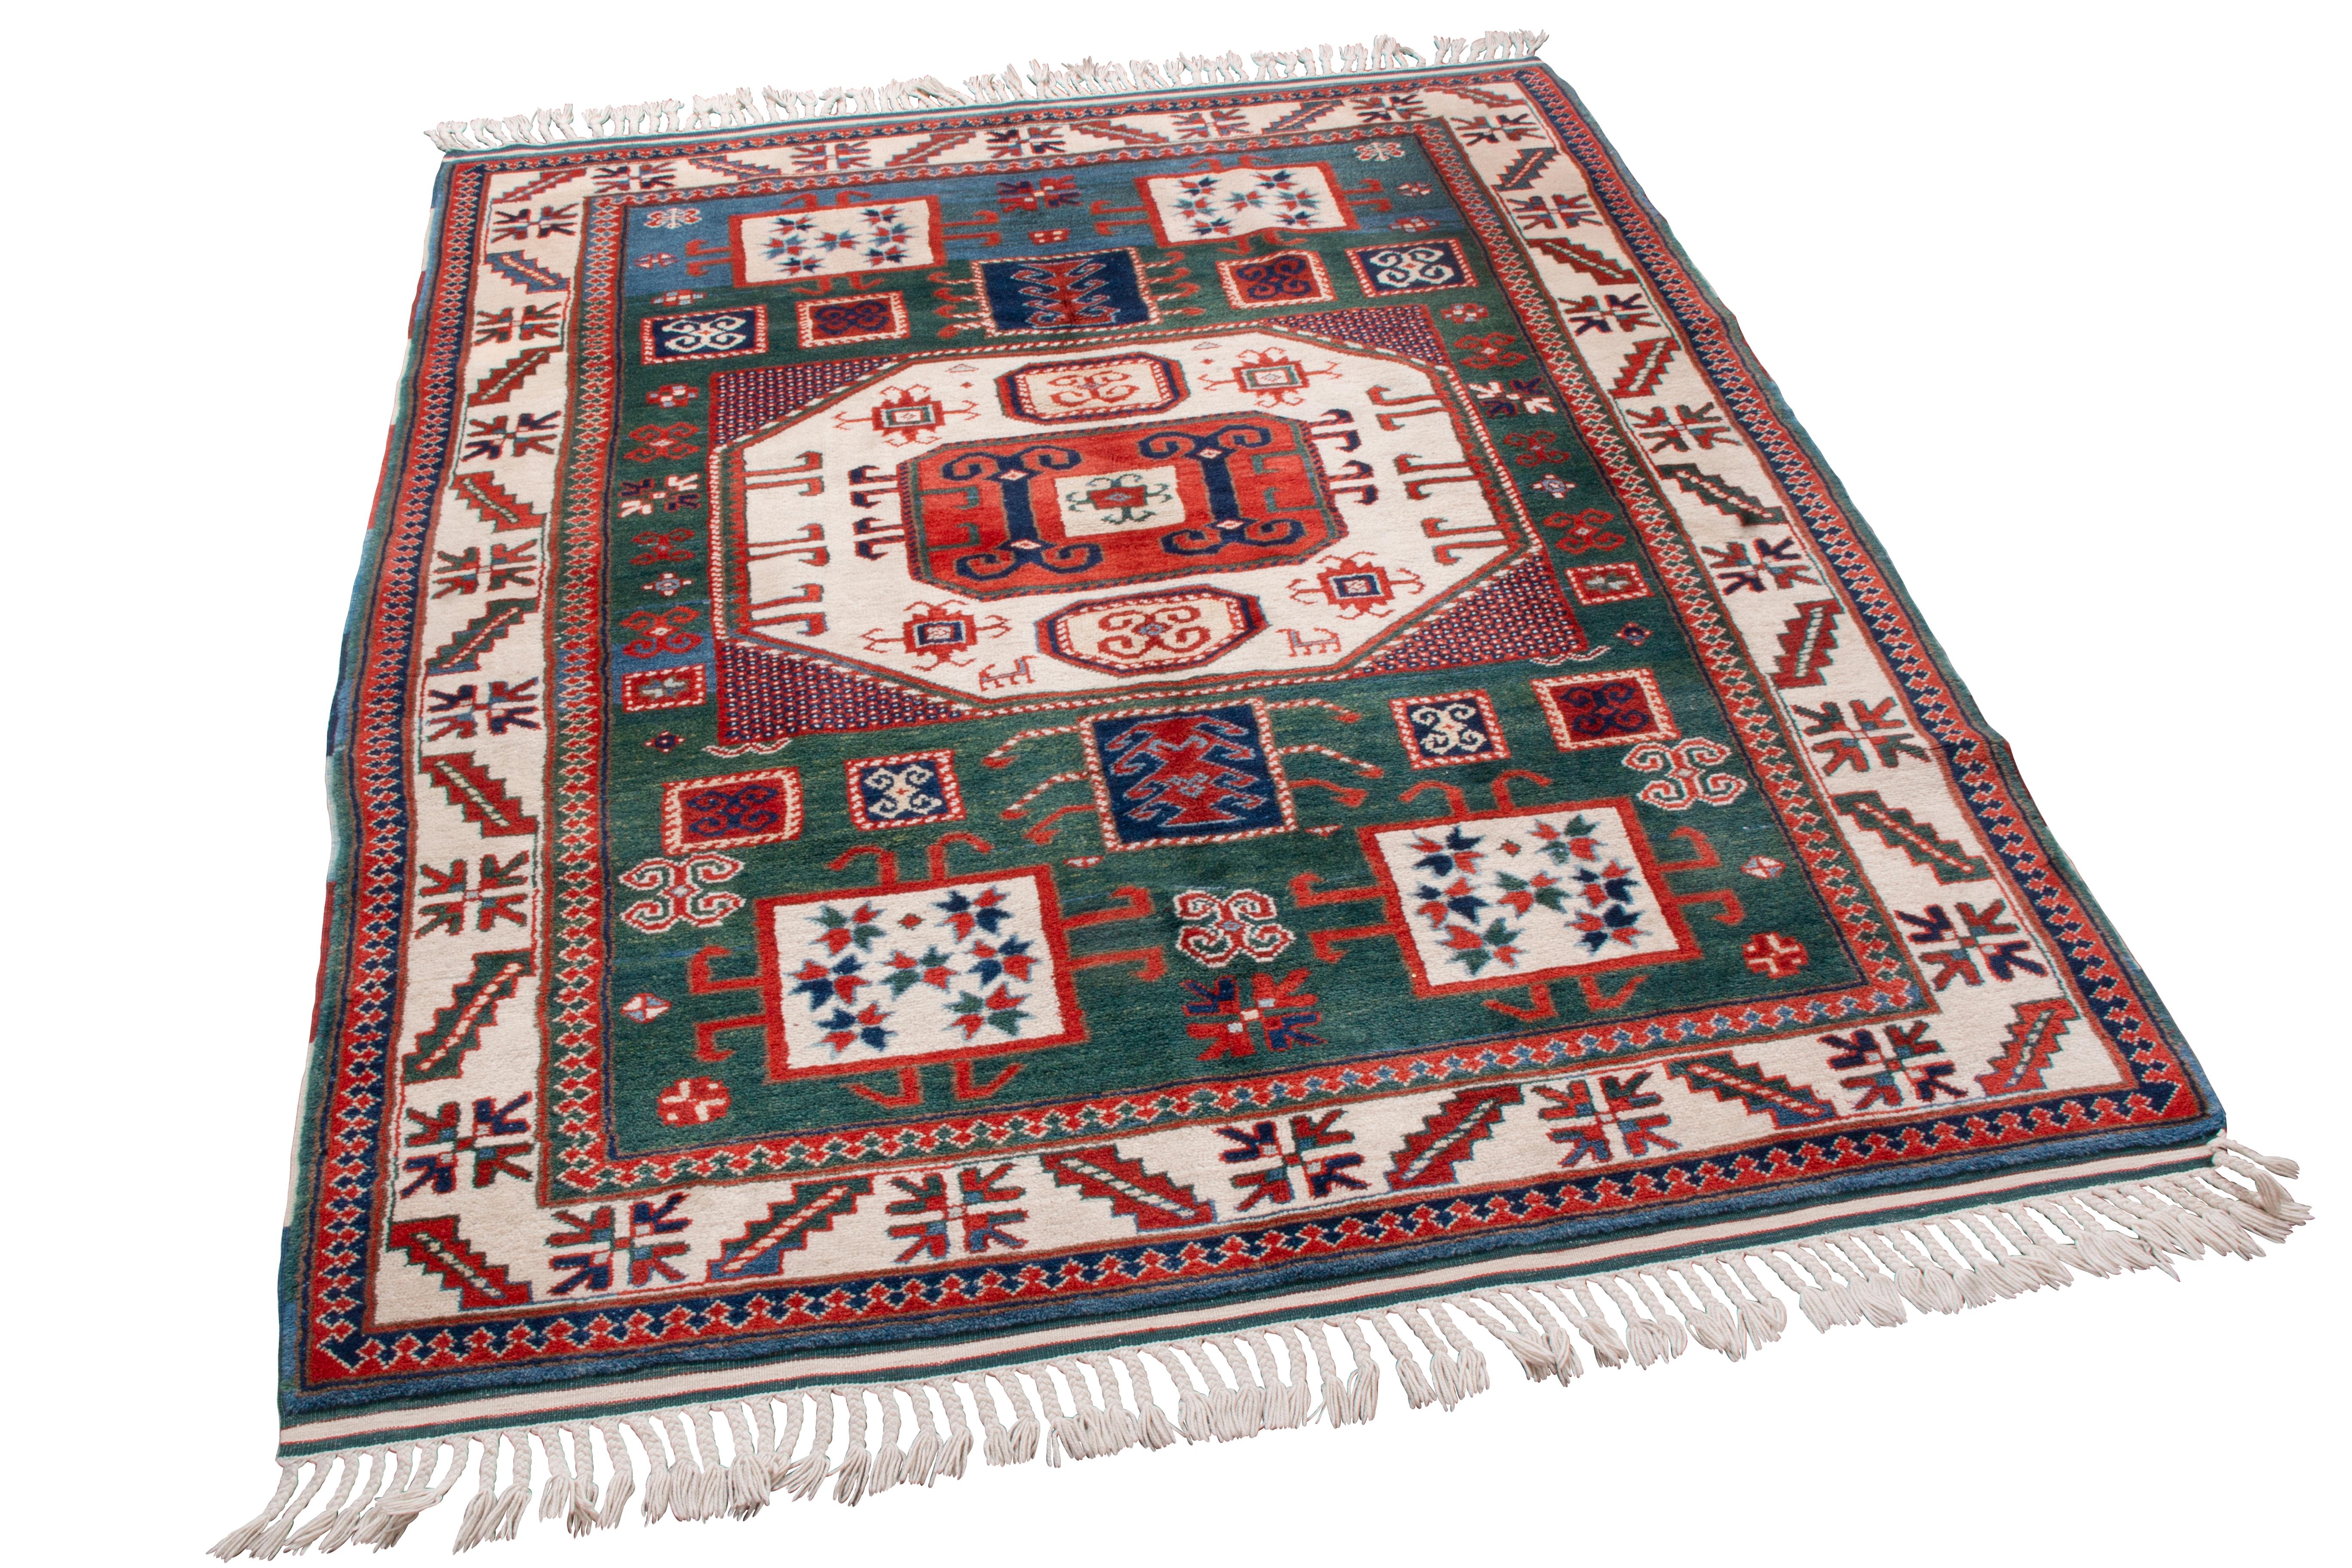 Originaire de Turquie, ce nouveau tapis de transition en laine Kazak arbore d'abondants symboles de cornes de bélier turques sur l'ensemble du motif. Symboles traditionnels de force et de résilience, il est rare d'en voir plus de quelques uns, et a